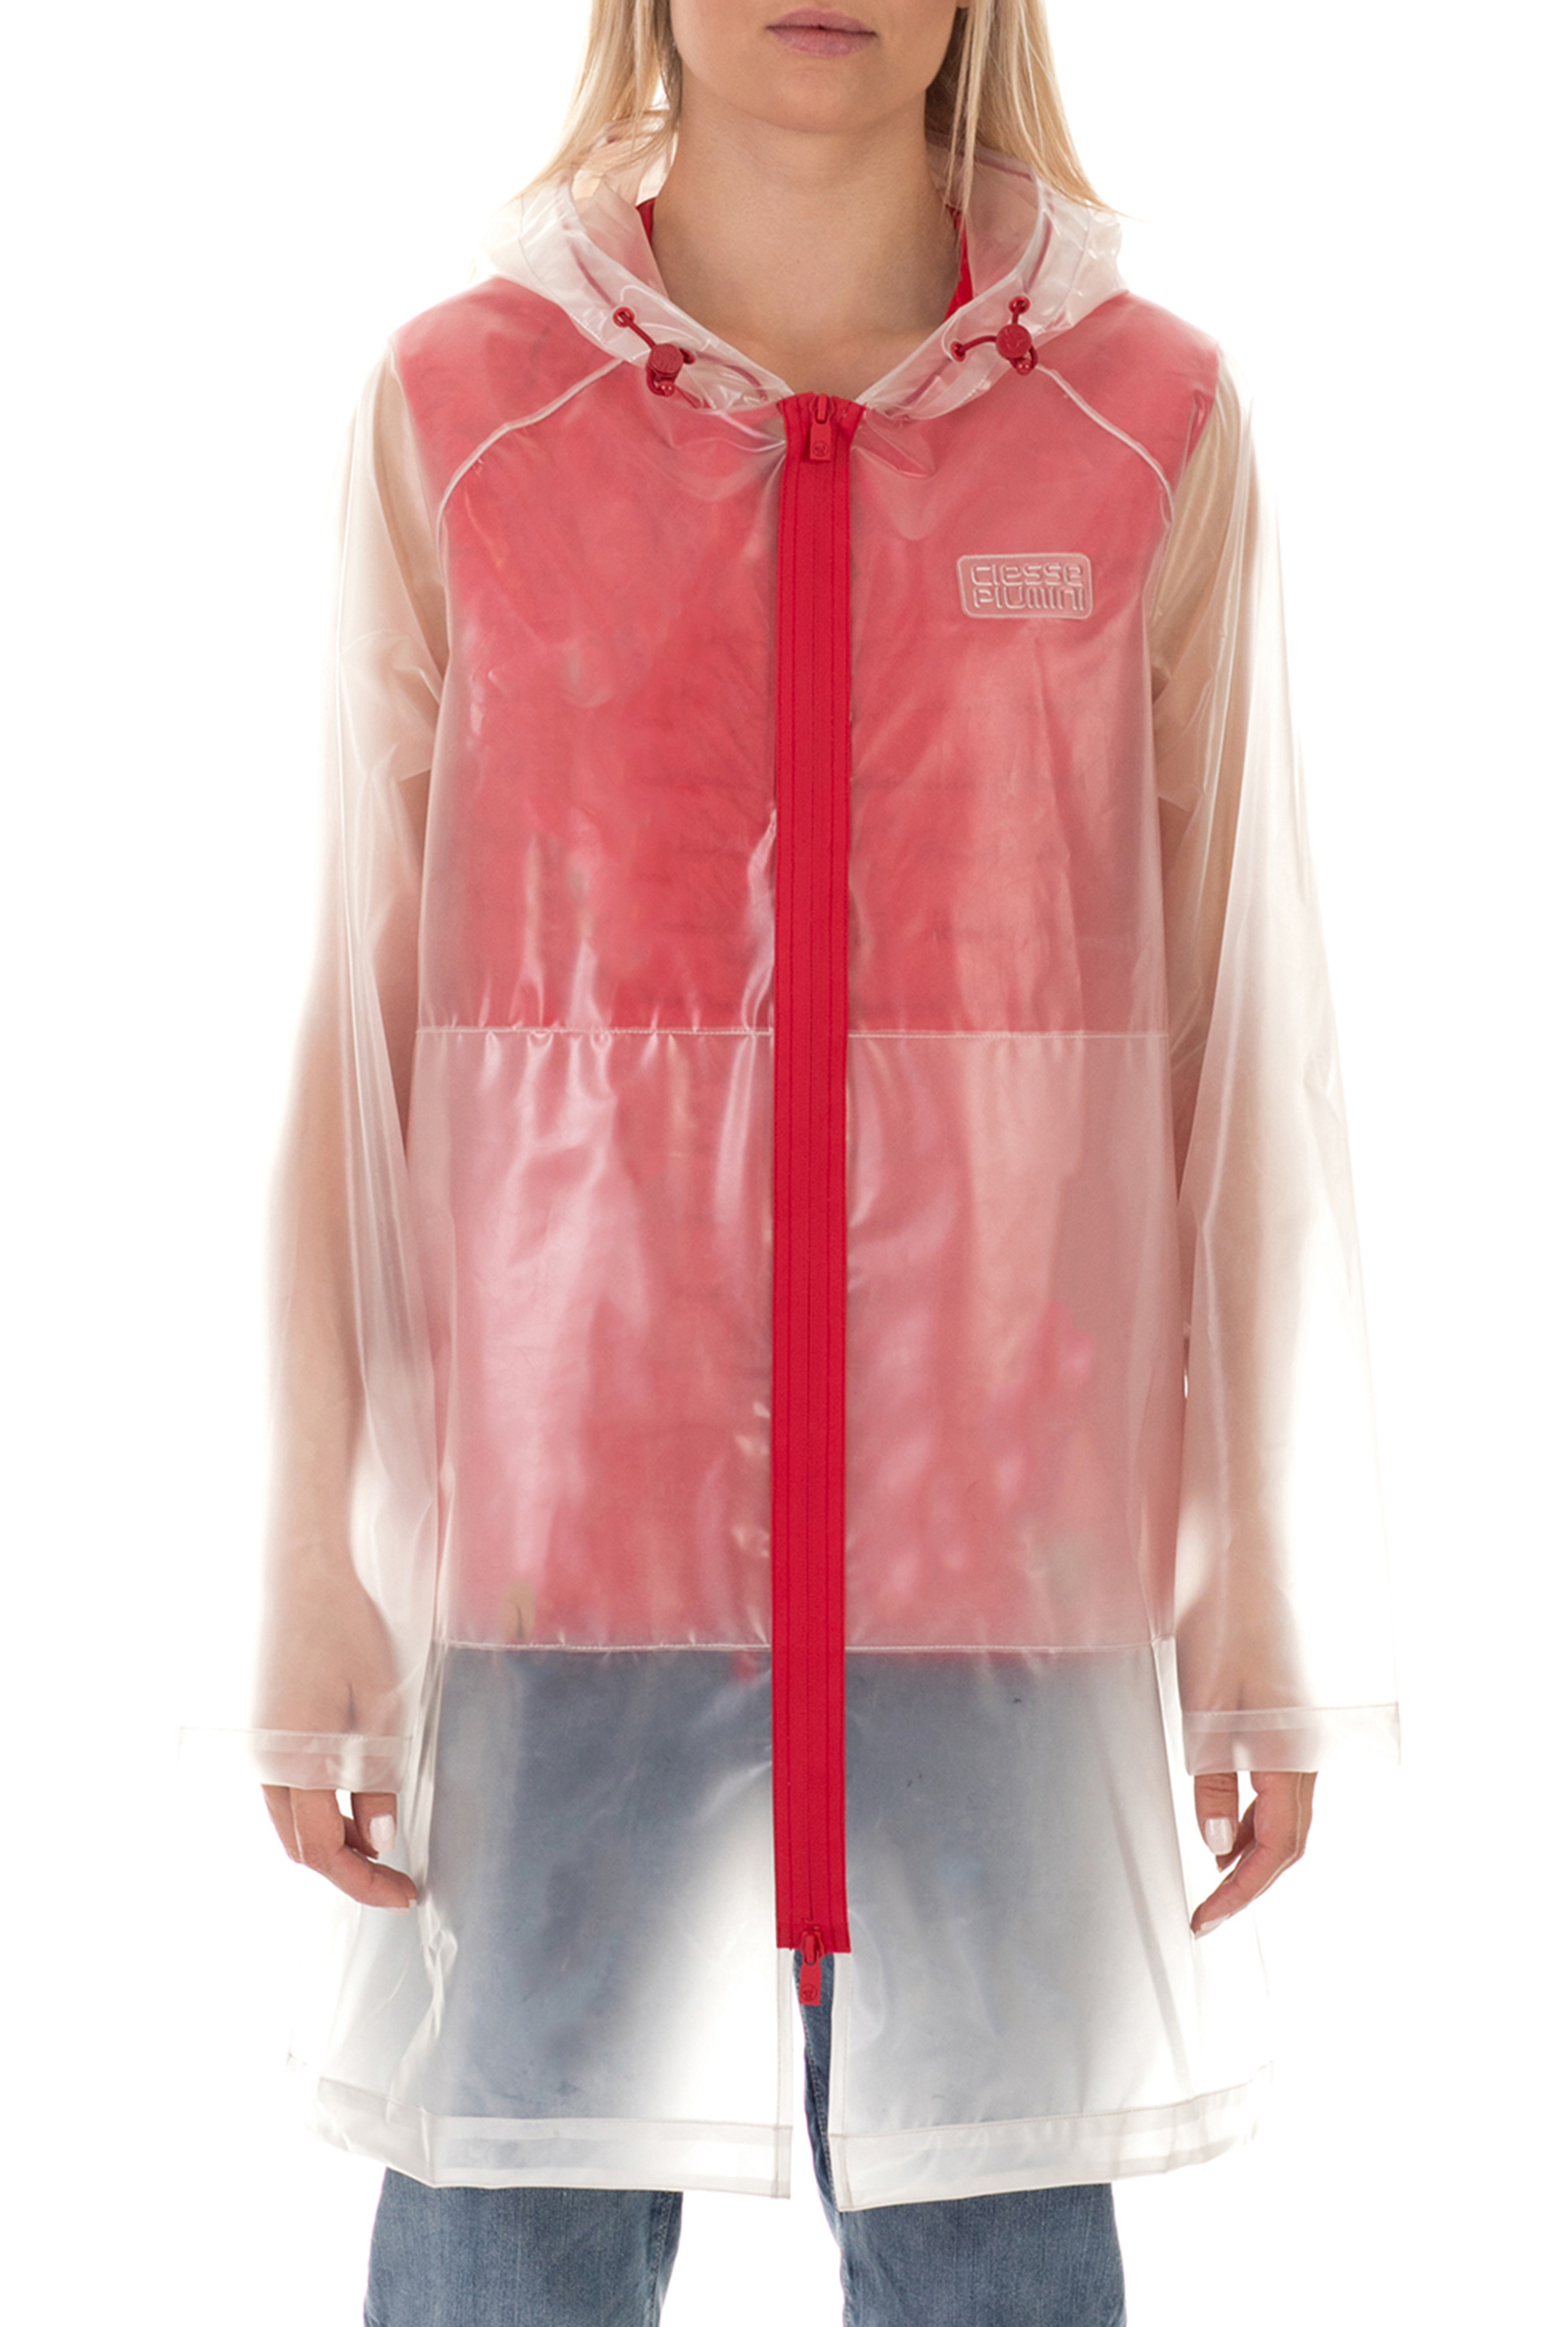 Γυναικεία/Ρούχα/Πανωφόρια/Τζάκετς CIESSE PIUMINI - Γυναικείο αδιάβροχο jacket CIESSE PIUMINI SHARON διάφανο κόκκινο